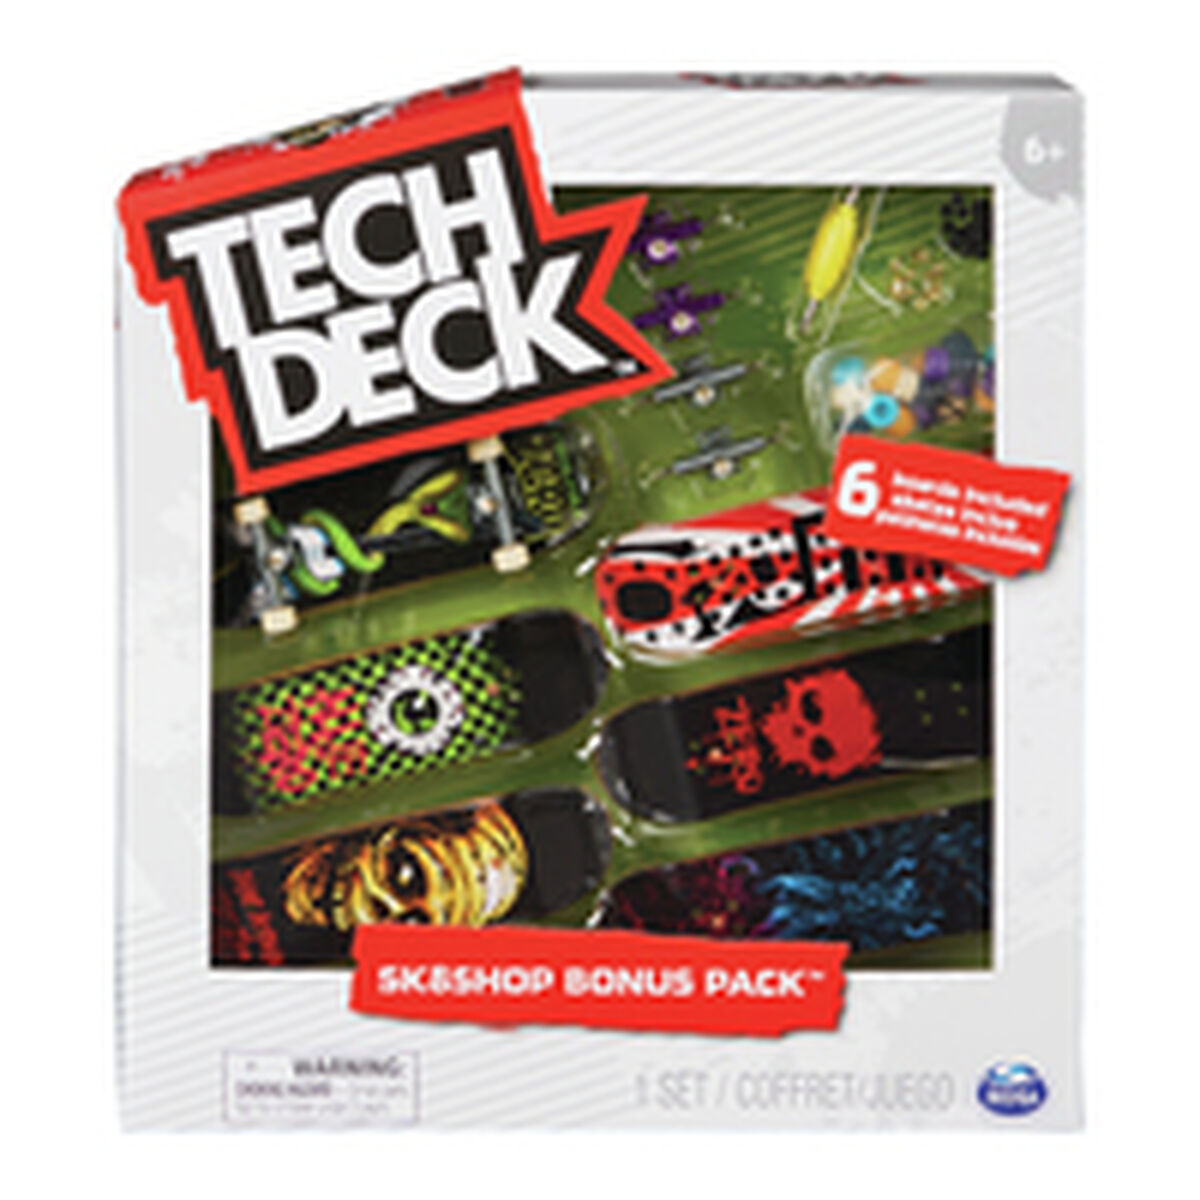 Vingerskateboard Tech Deck 6028845